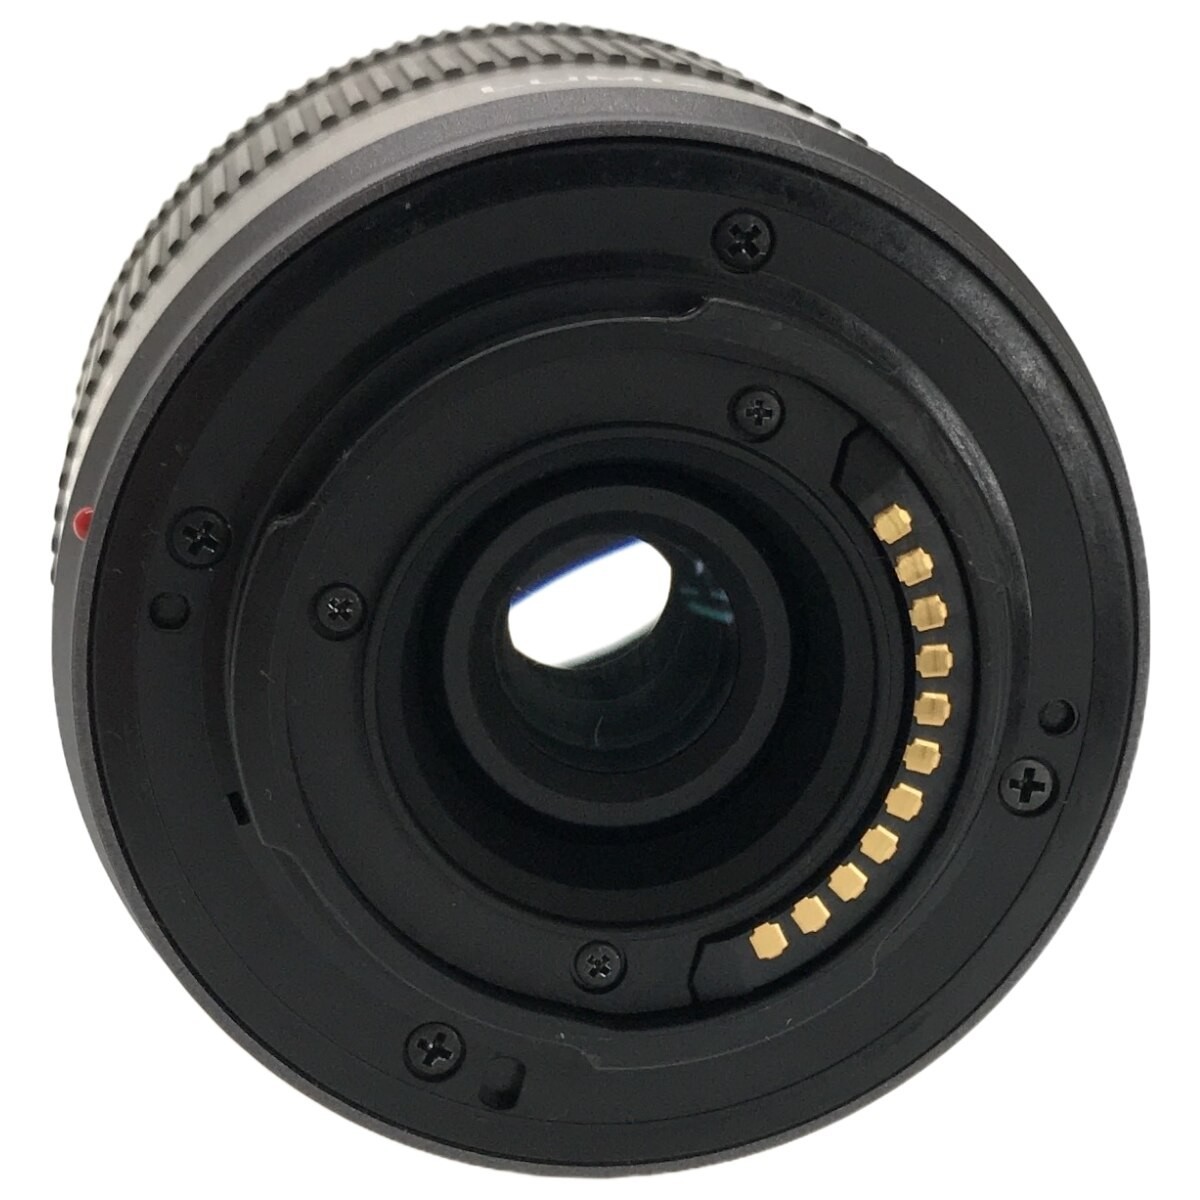 【動作品】Panasonic LUMIX DMC-GH2 G VARIO F3.5-5.6 14-42mm ASPH MEGA O.I.S シルバー 1605万画素 バリアングル式 ミラーレス一眼 C3917_画像8